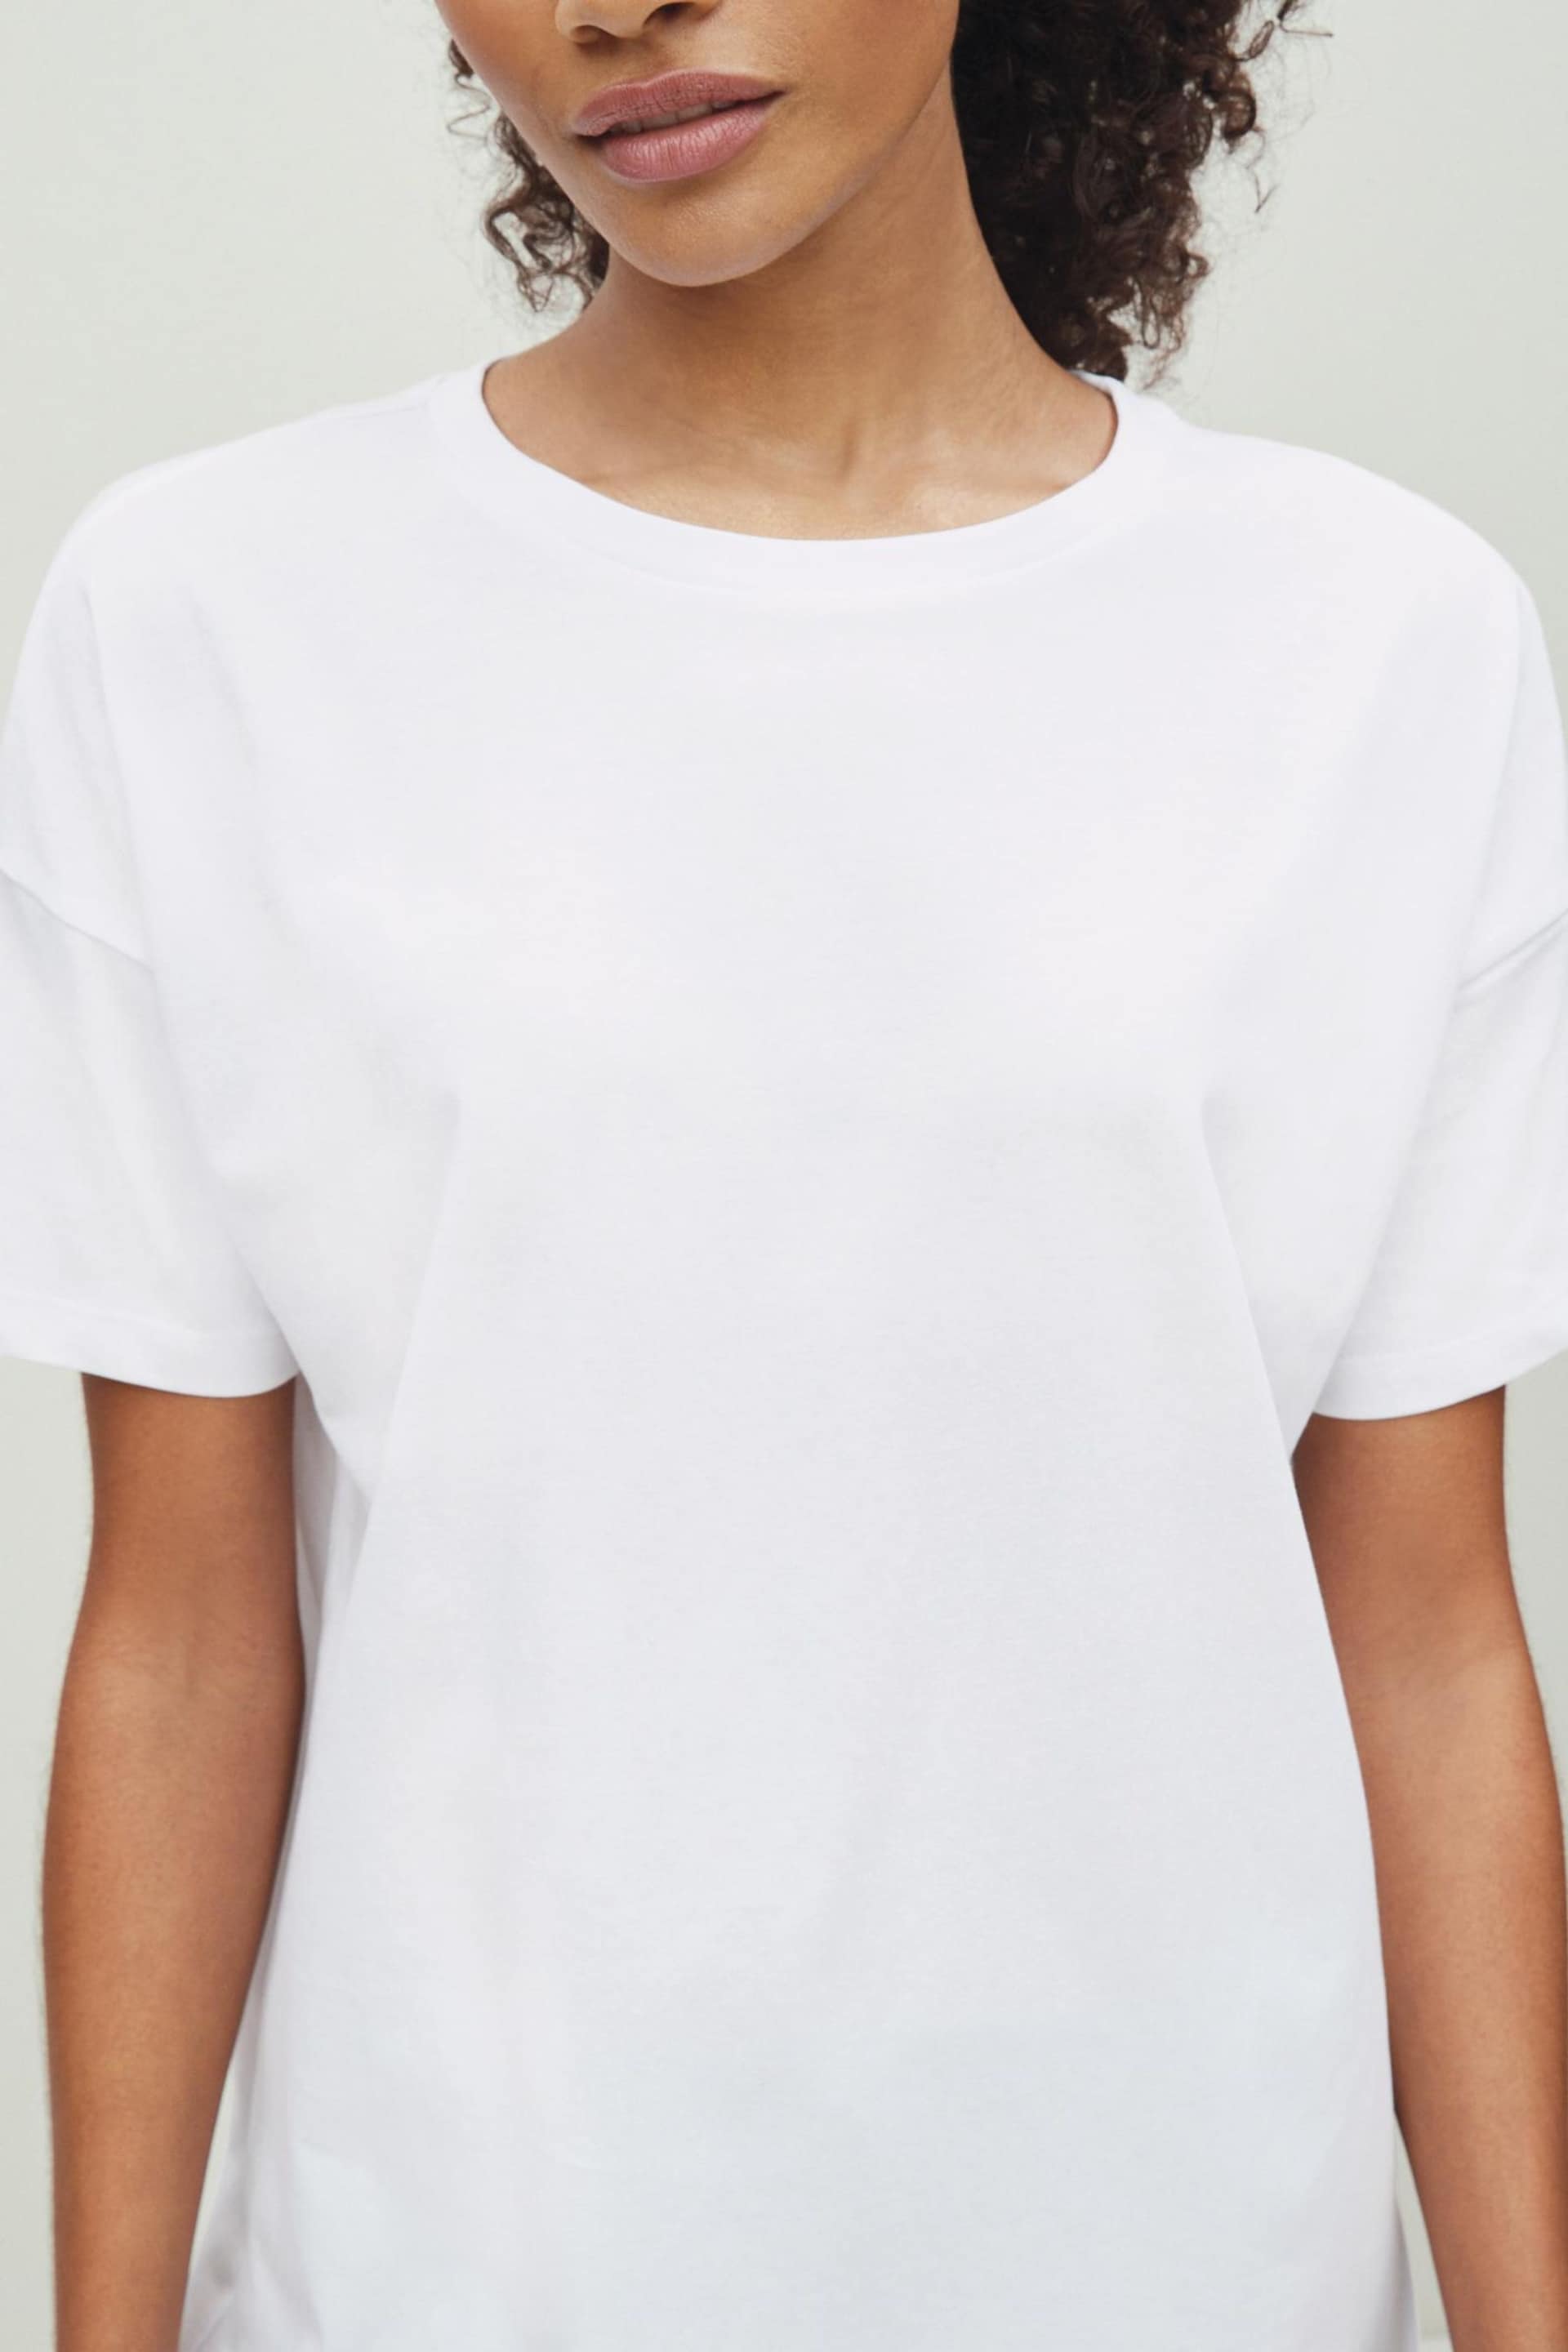 Brilliant White Oversized T-Shirt - Image 4 of 5